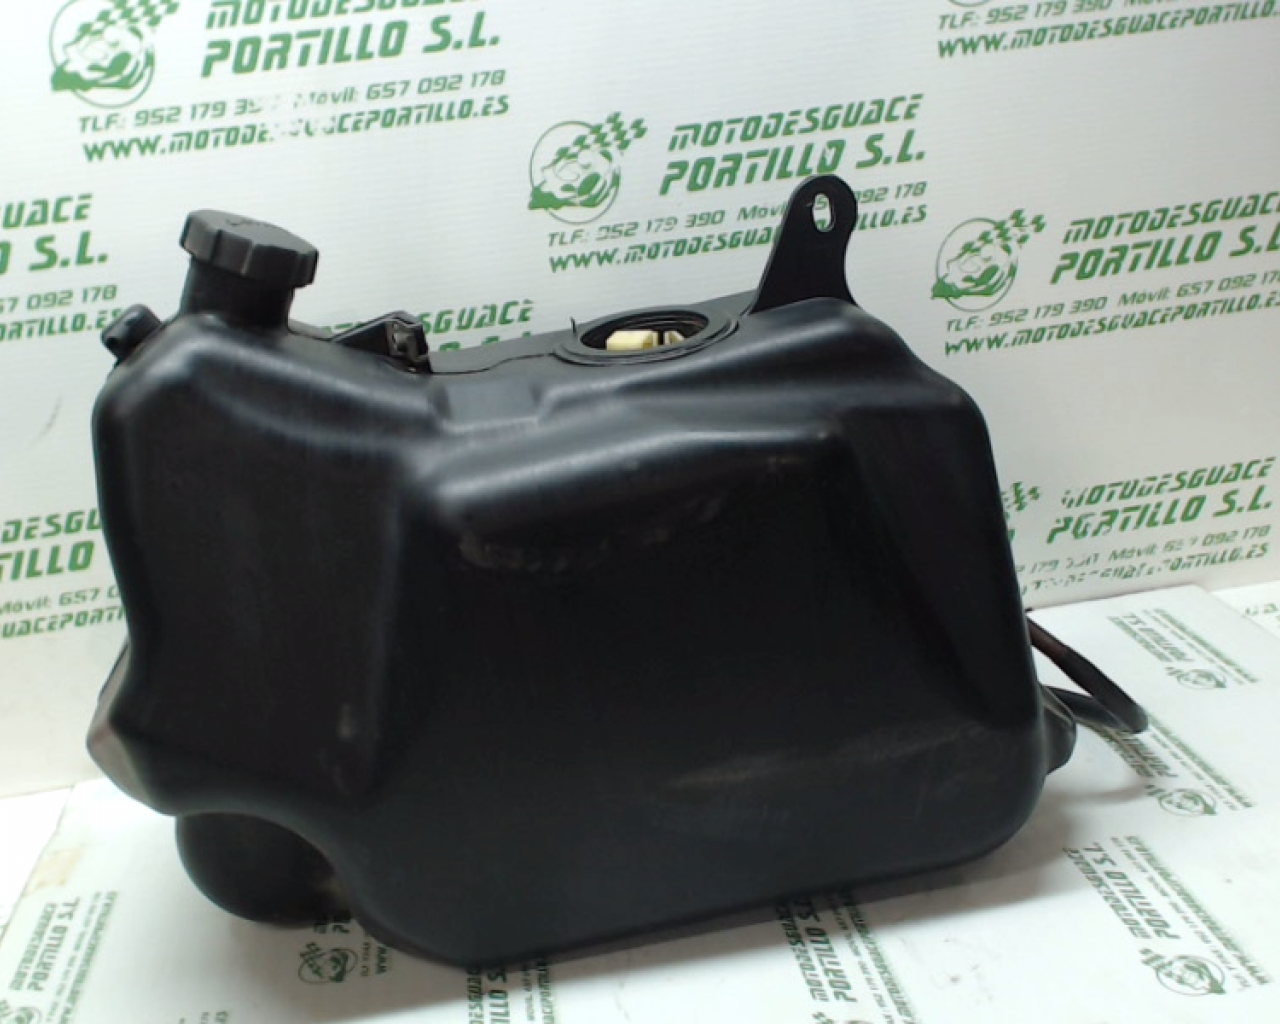 Deposito gasolina Piaggio X9 125 (2002-2007)